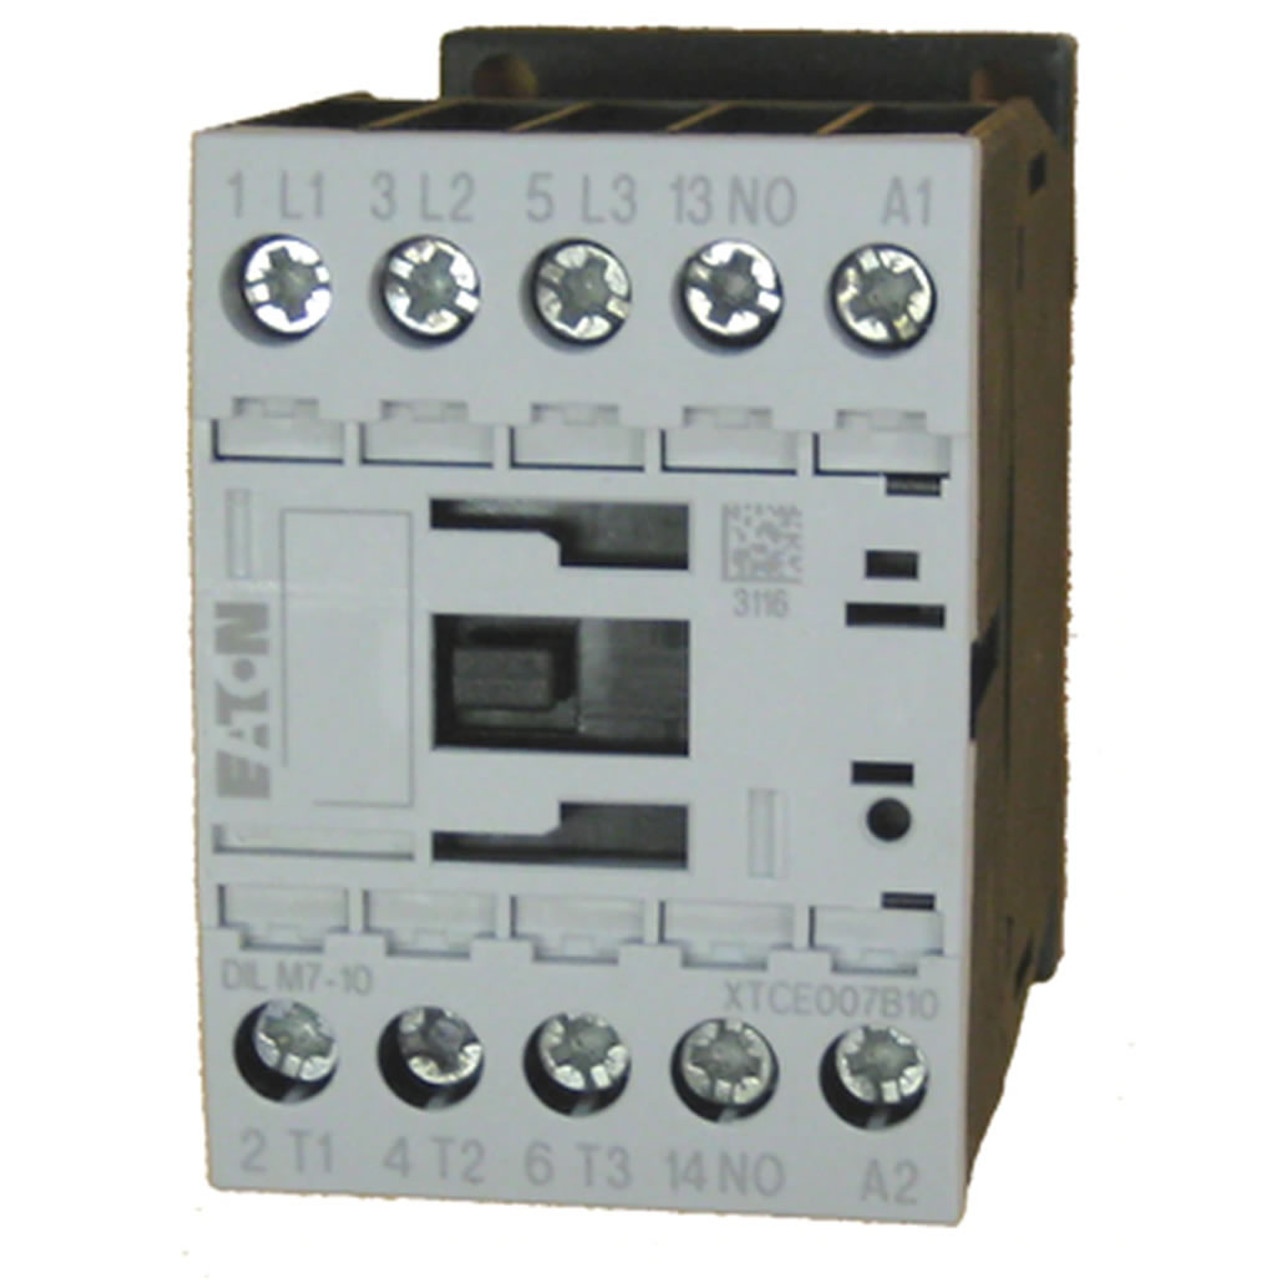 Eaton XTCE007B10W contactor